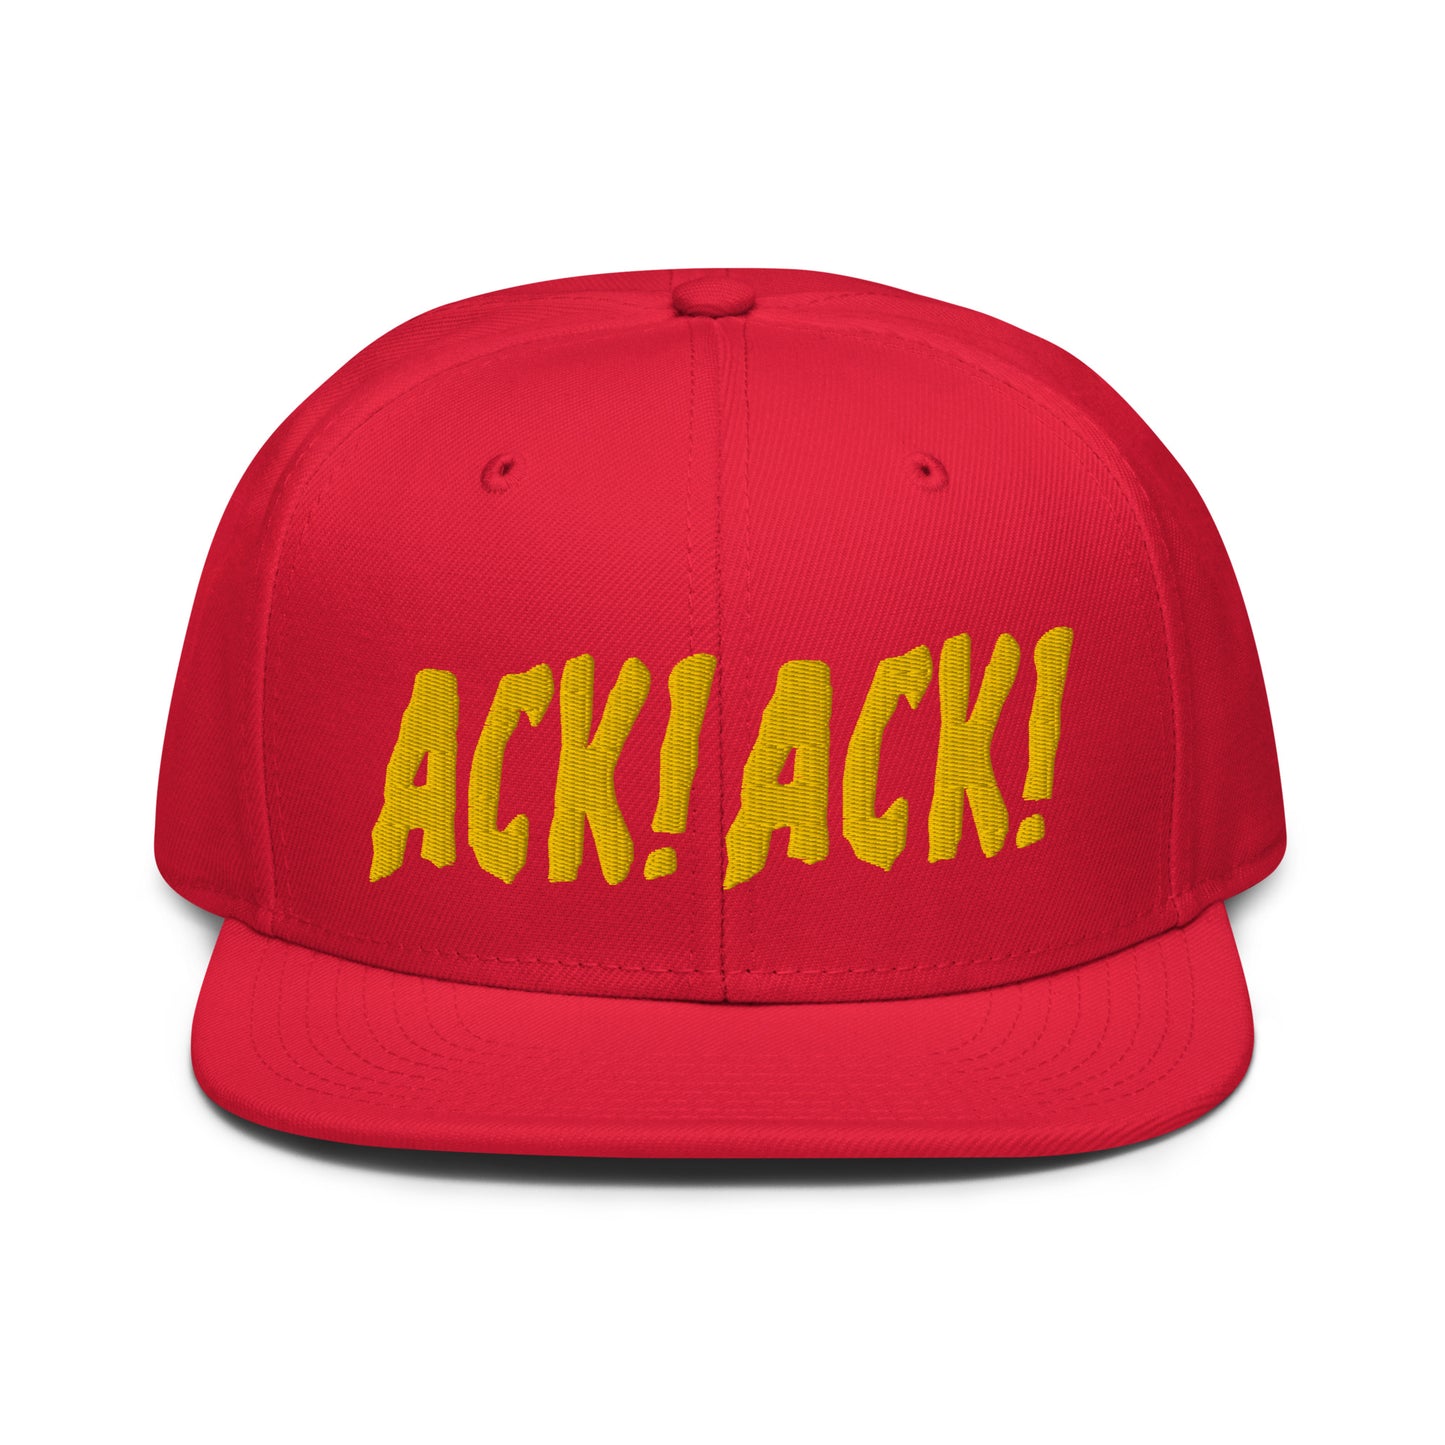 ACK! ACK! snapback hat